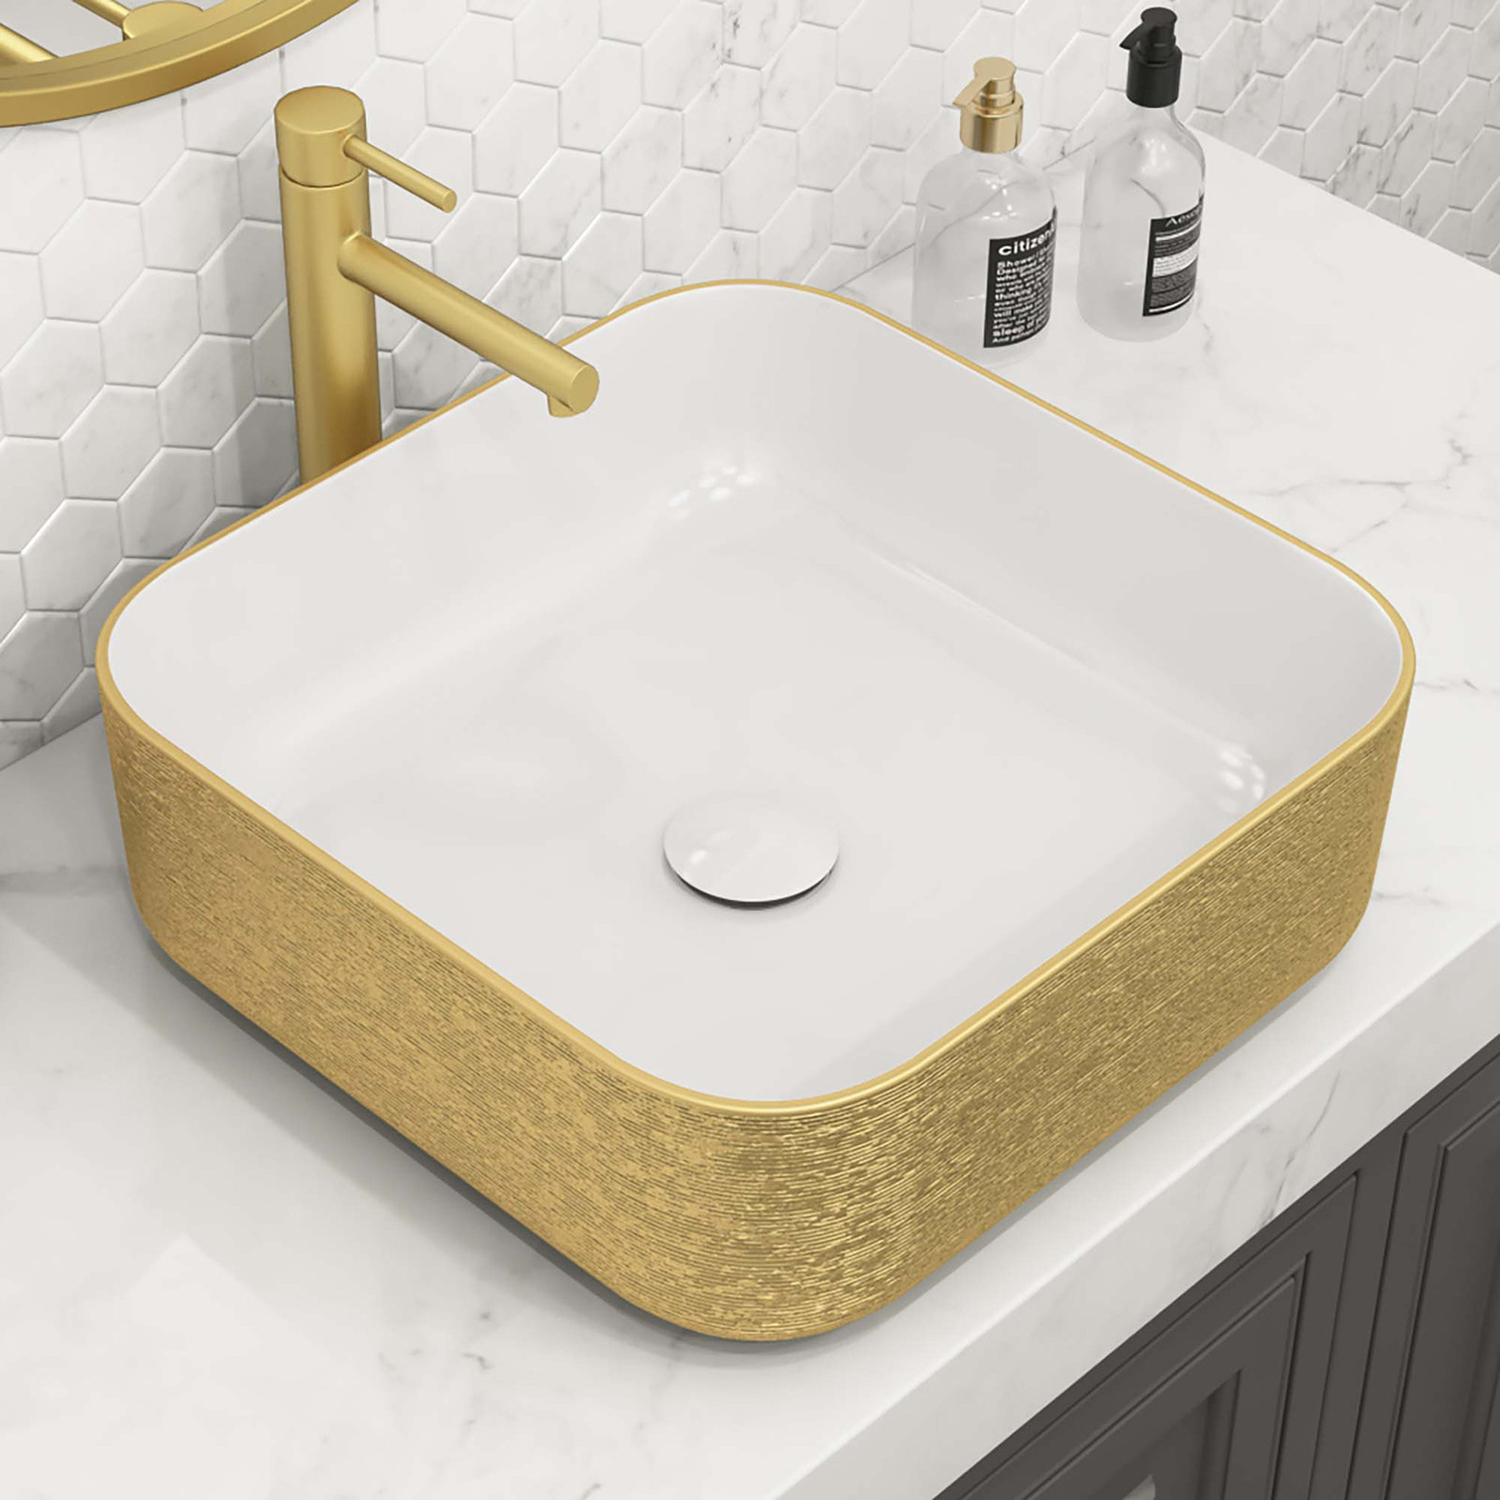 Luxuriöses königliches Waschbecken, Aufsatzwaschbecken, Kunstwaschbecken aus Keramik, goldenes Badezimmer-Waschbecken, vergoldetes Handwaschbecken